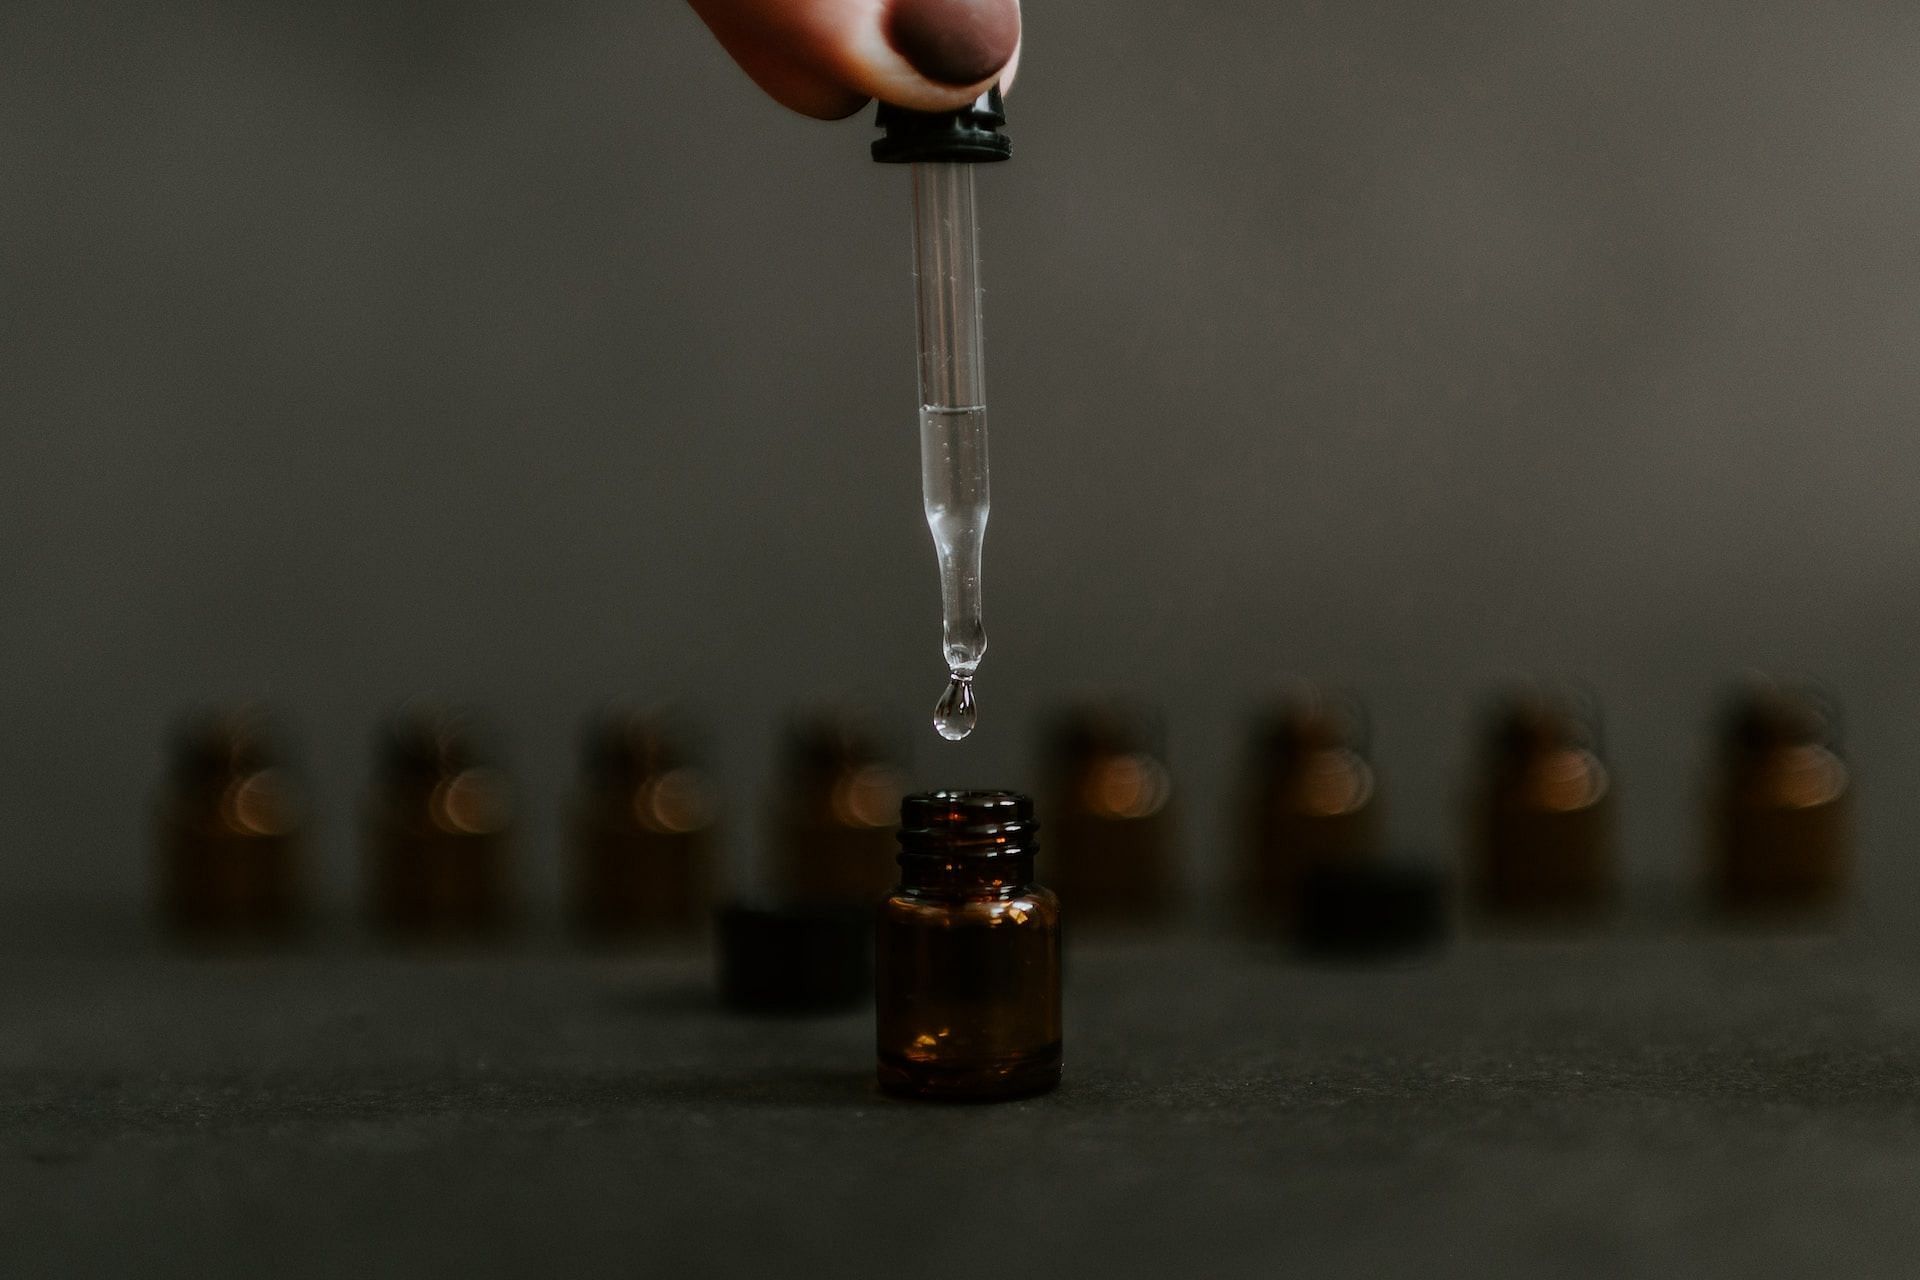 Using castor oil (Photo by Kelly Sikkema on Unsplash)